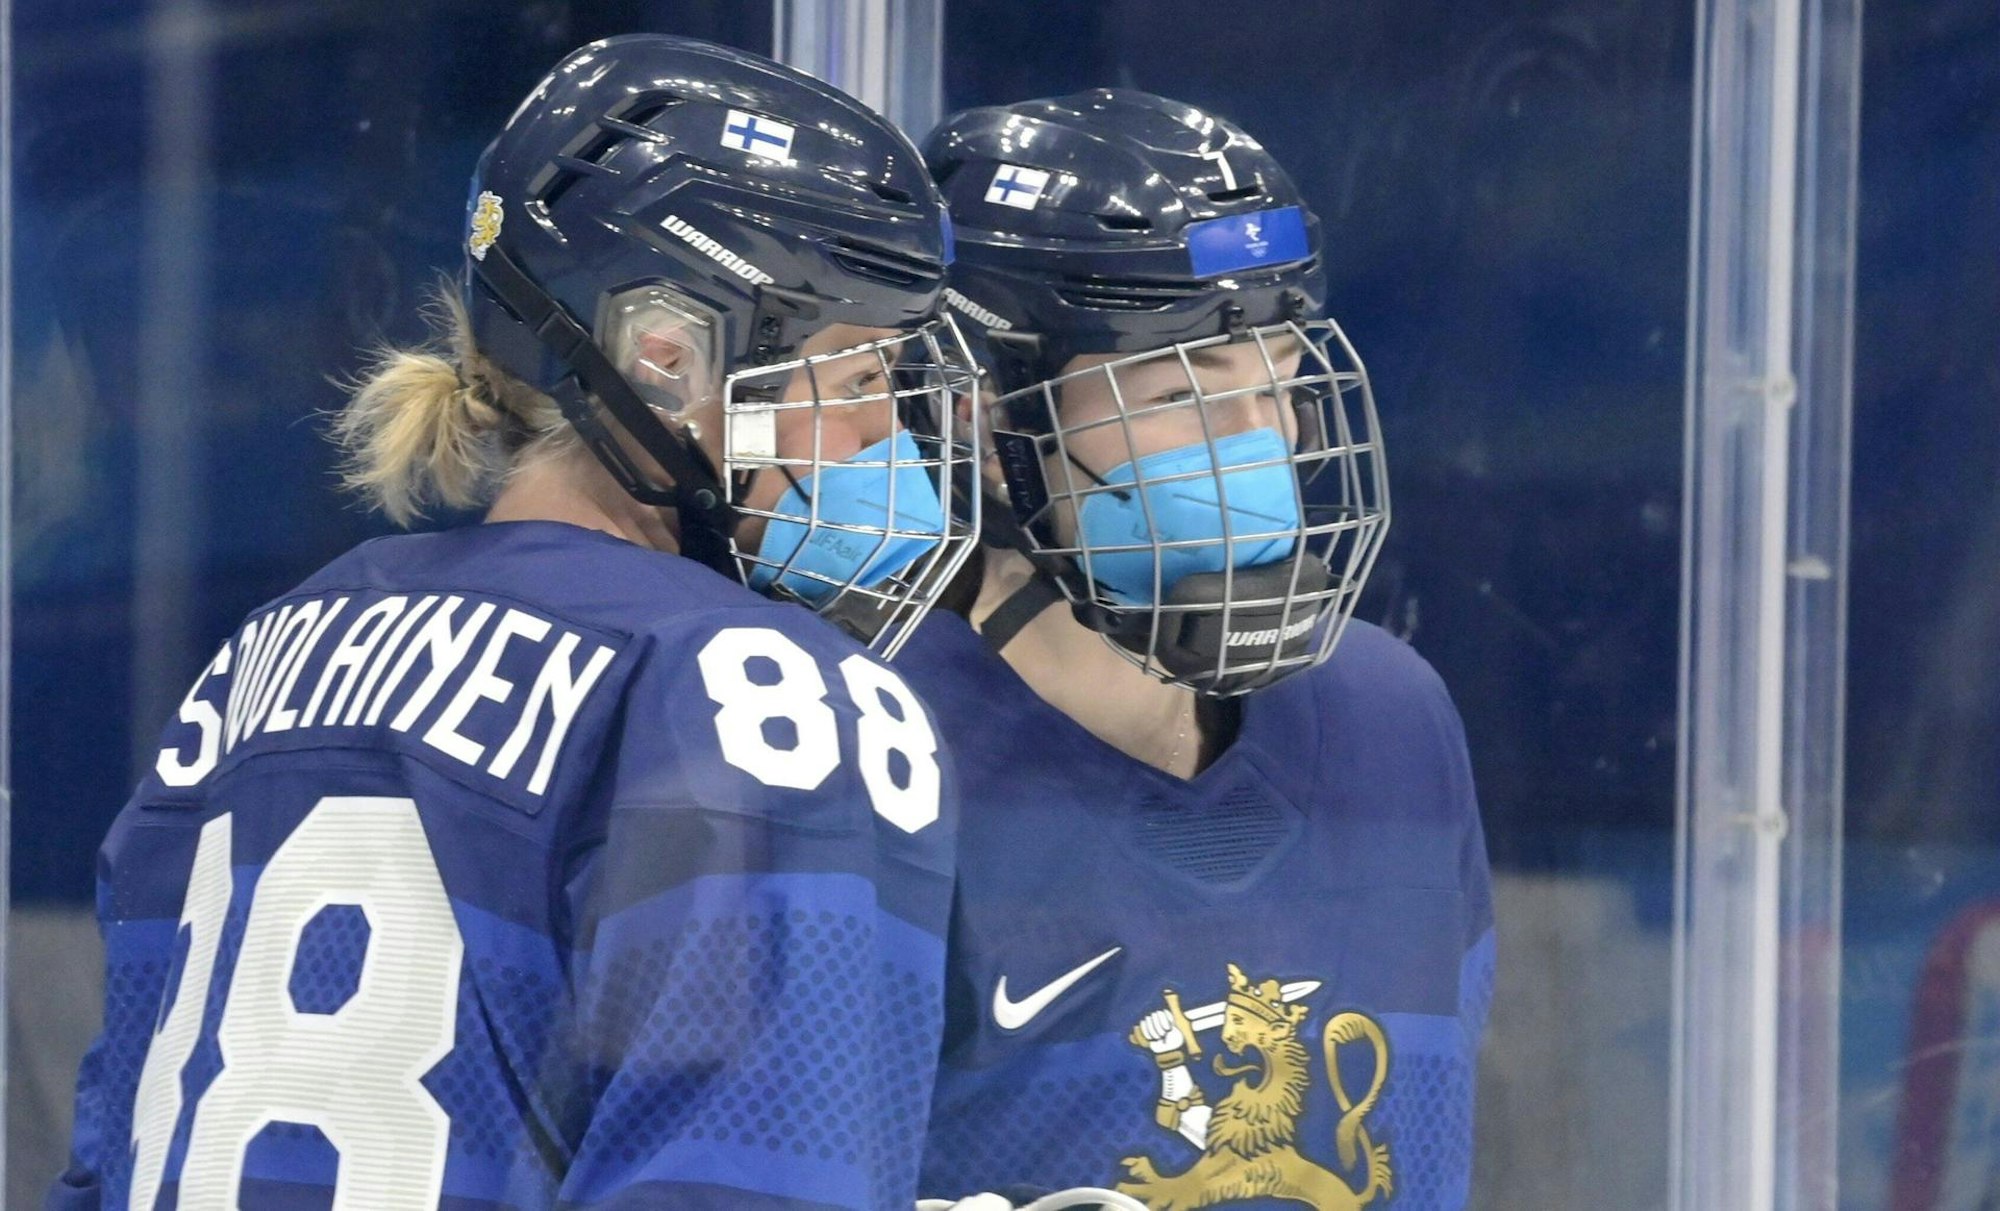 Eishockey-Spielerinnen mit Maske